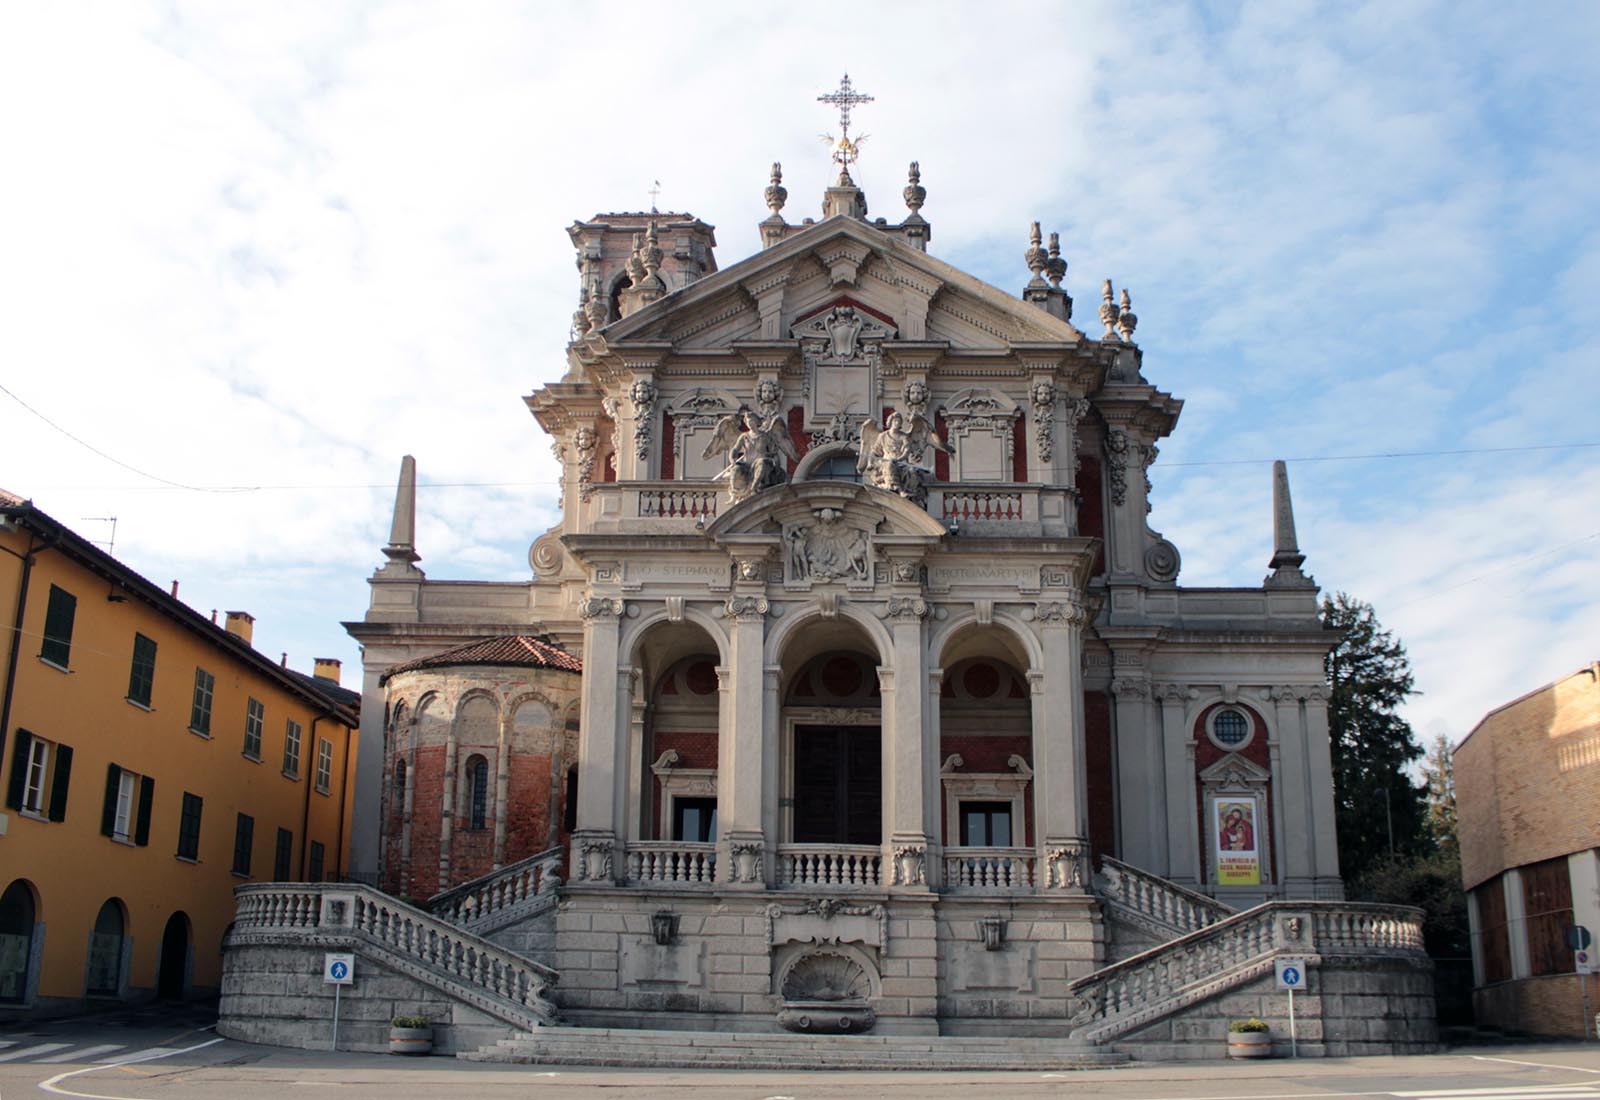 Piazza Libertà in Appiano Gentile - The church of Santo Stefano